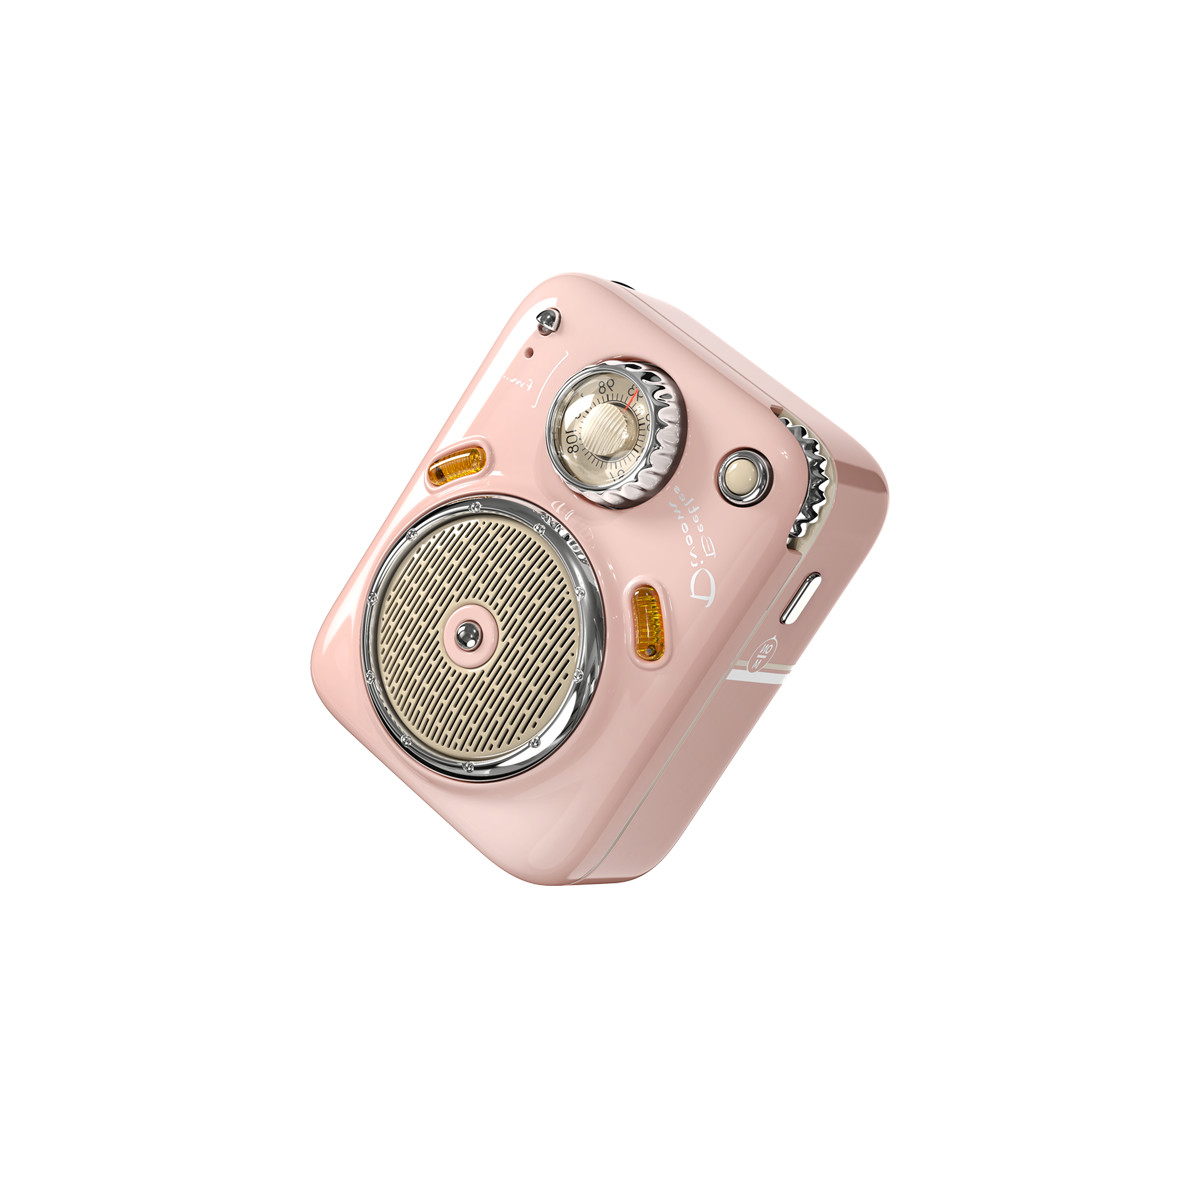 Loa Bluetooth Divoom - Beetles FM - Thiết kế siêu nhỏ, cổ điển, Tích hợp FM radio và thẻ nhớ TF card - Hàng chính hãng